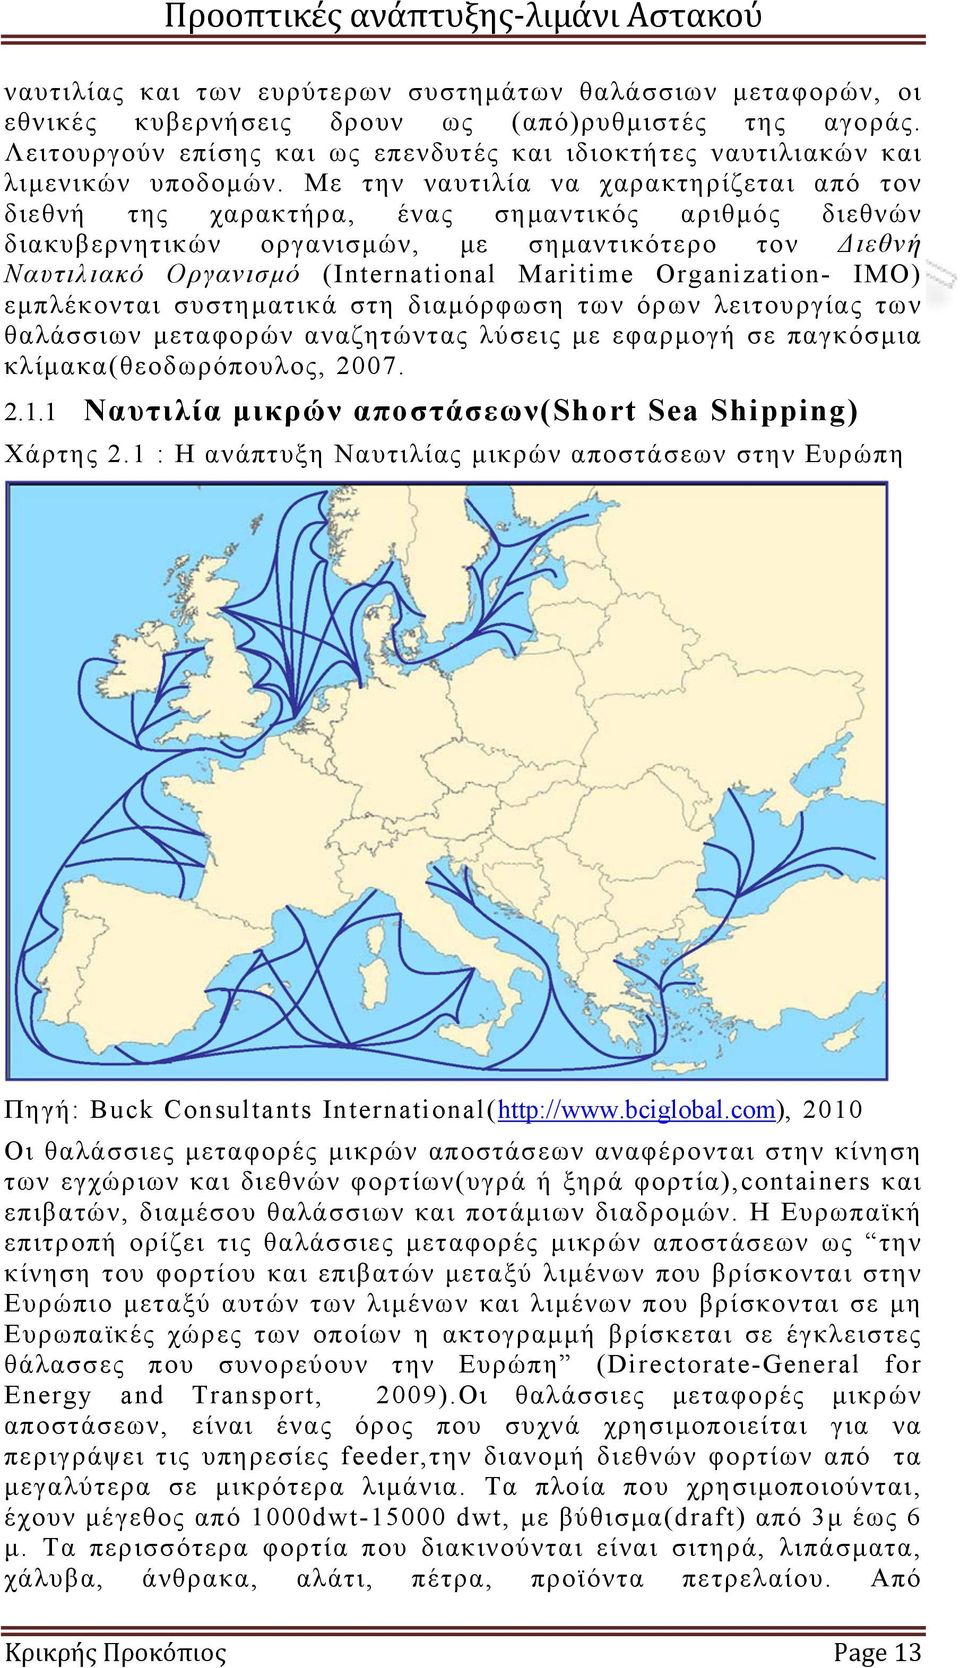 Με την ναυτιλία να χαρακτηρίζεται από τον διεθνή της χαρακτήρα, ένας σημαντικός αριθμός διεθνών διακυβερνητικών οργανισμών, με σημαντικότερο τον Διεθνή Ναυτιλιακό Οργανισμό (International Maritime